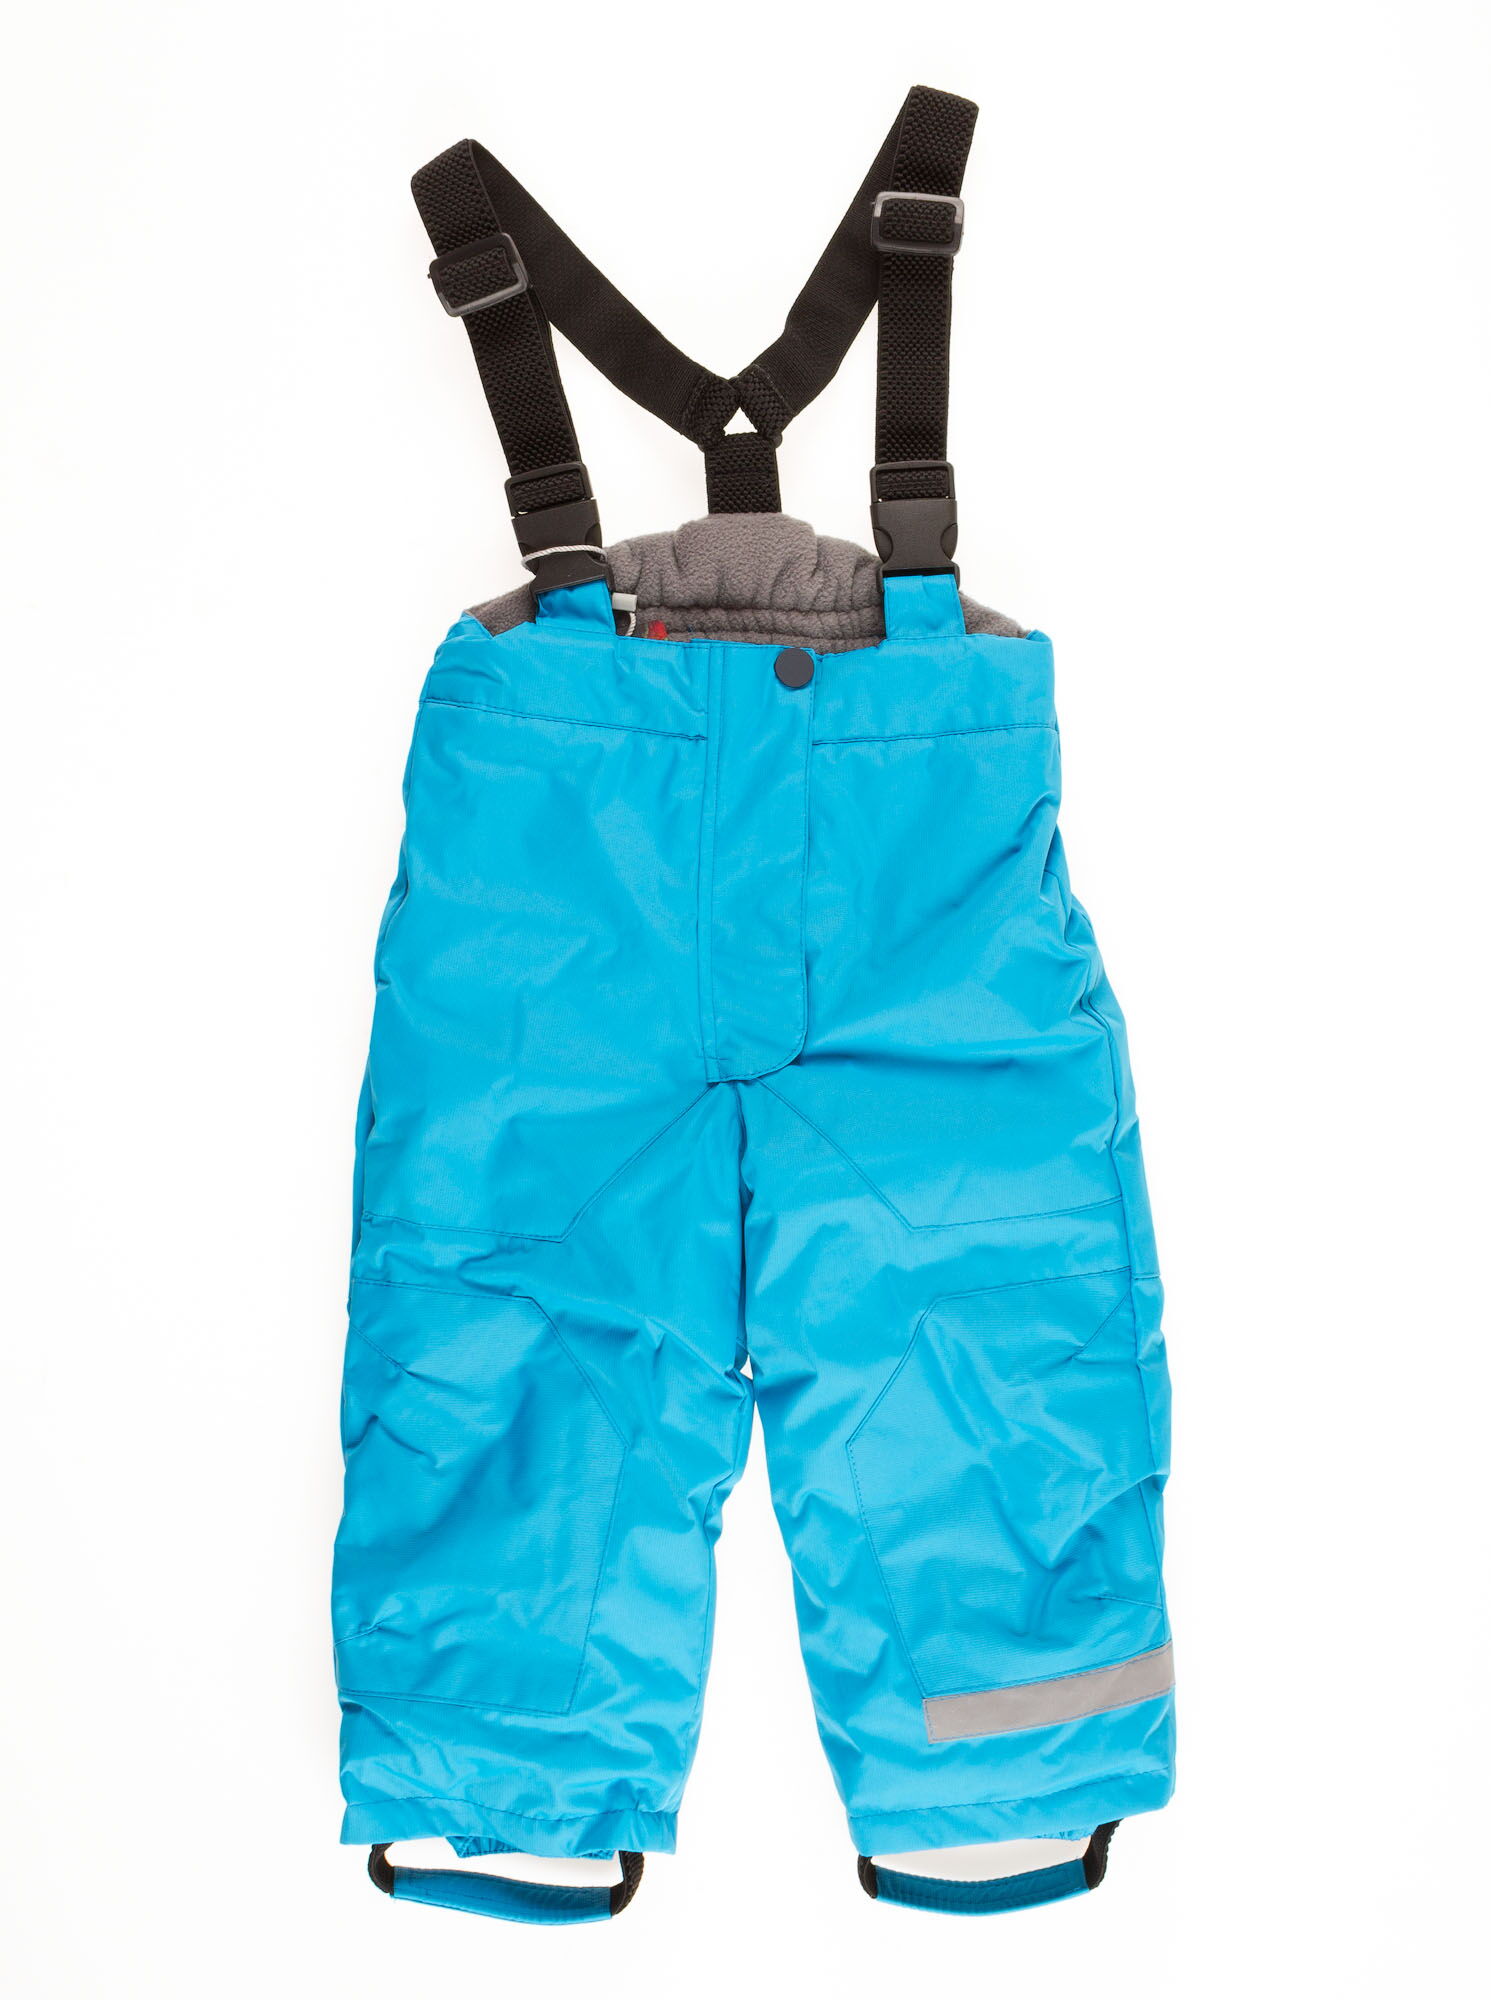 Комбинезон зимний раздельный для мальчика (куртка+штаны) DCkids голубой Скай - Киев